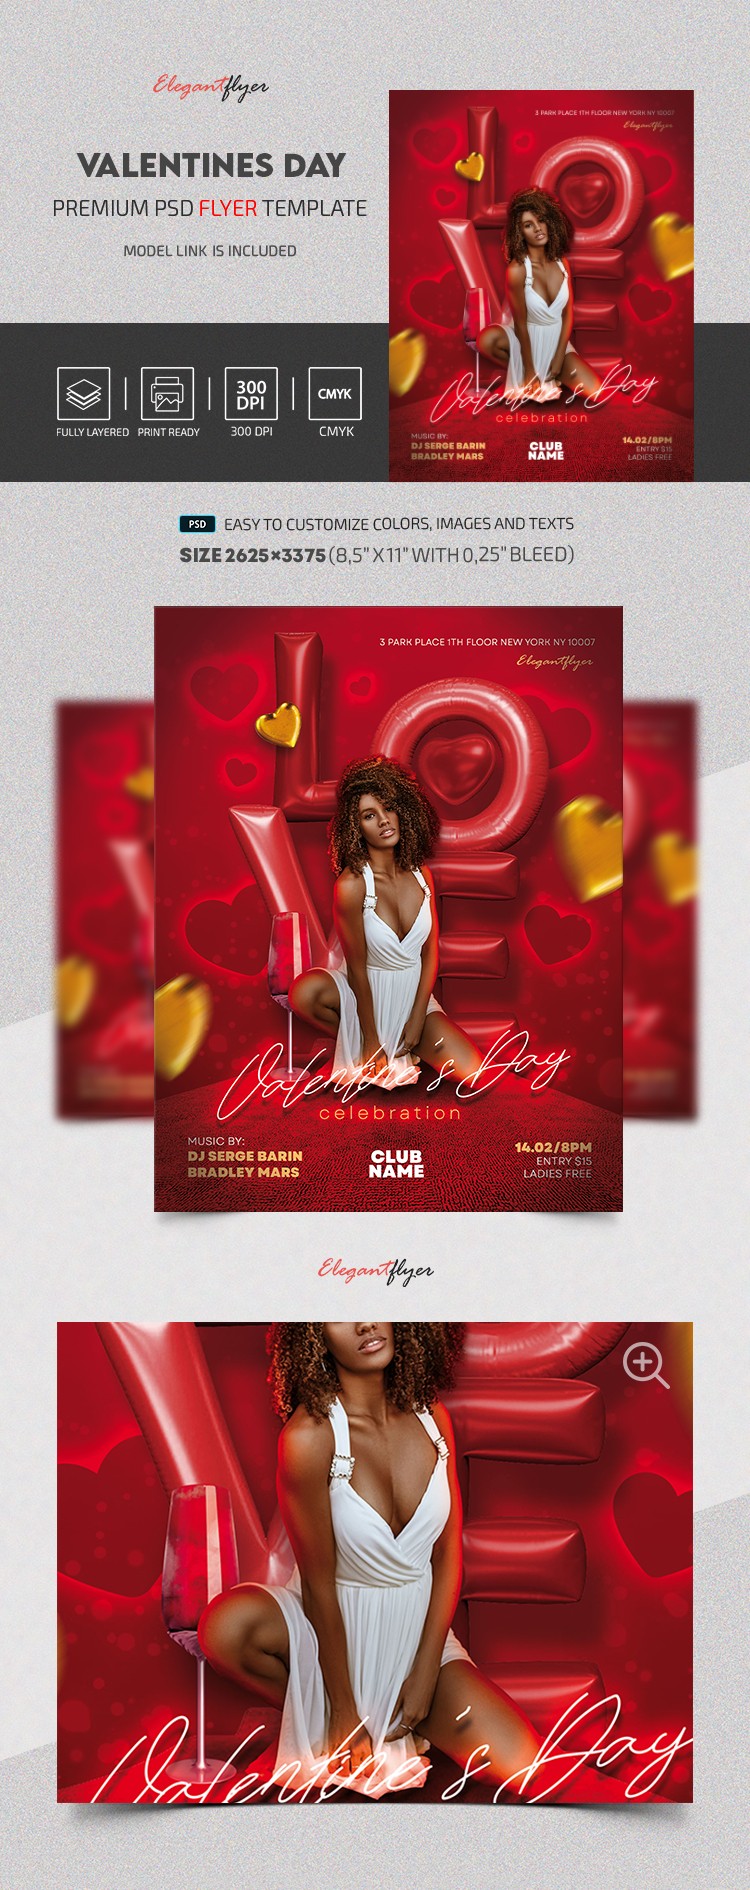 Valentine's Day Flyer by ElegantFlyer